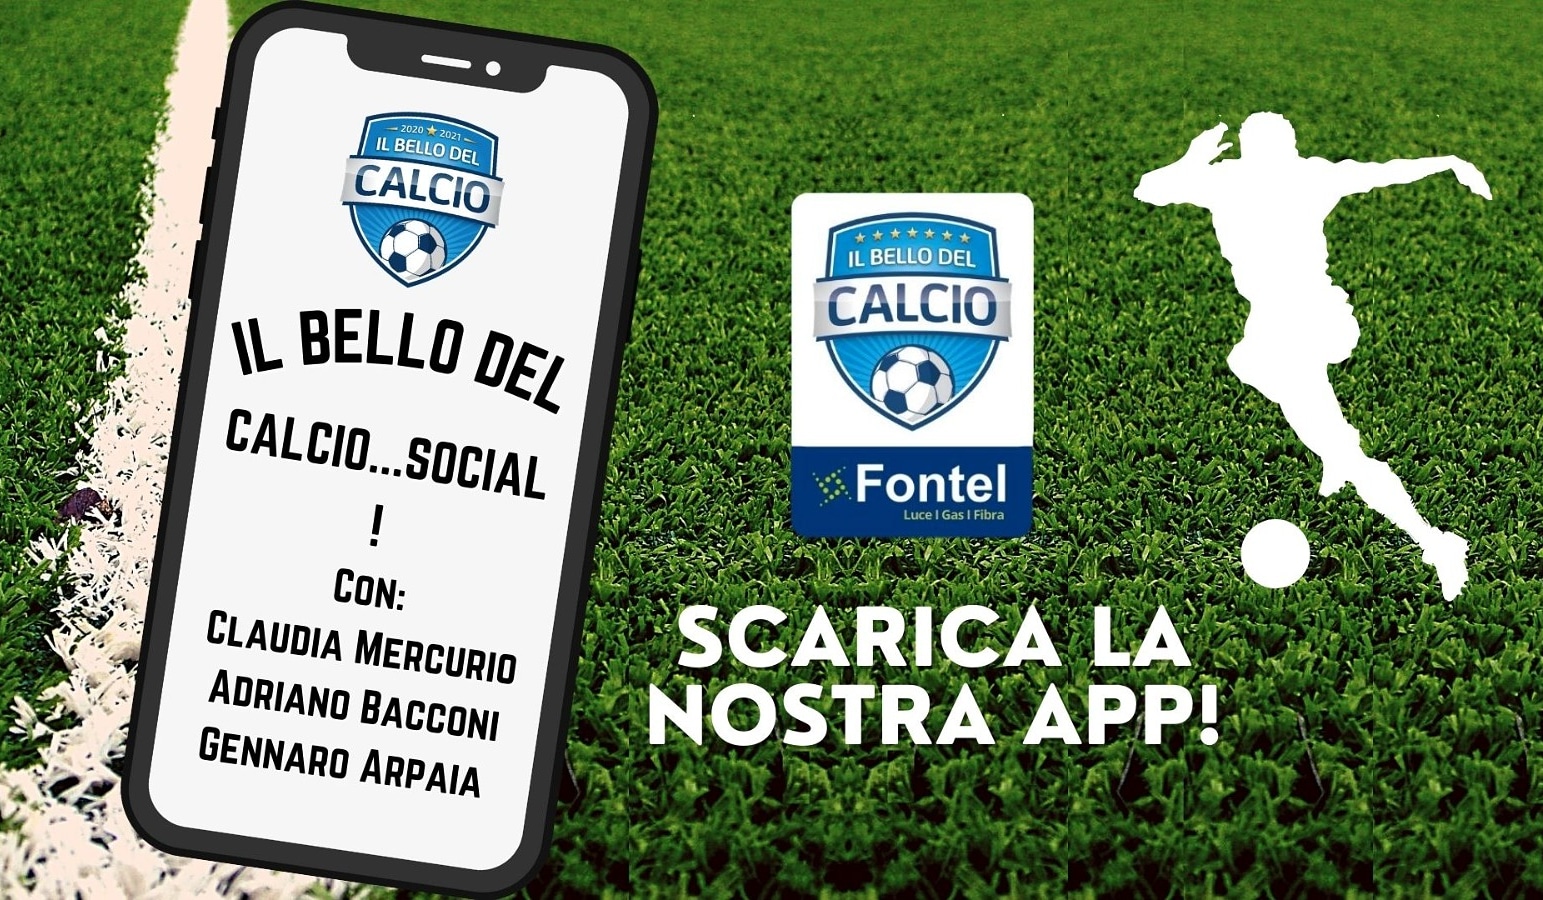 Torna “Il Bello del Calcio Social”, diretta streaming alle 19:30!